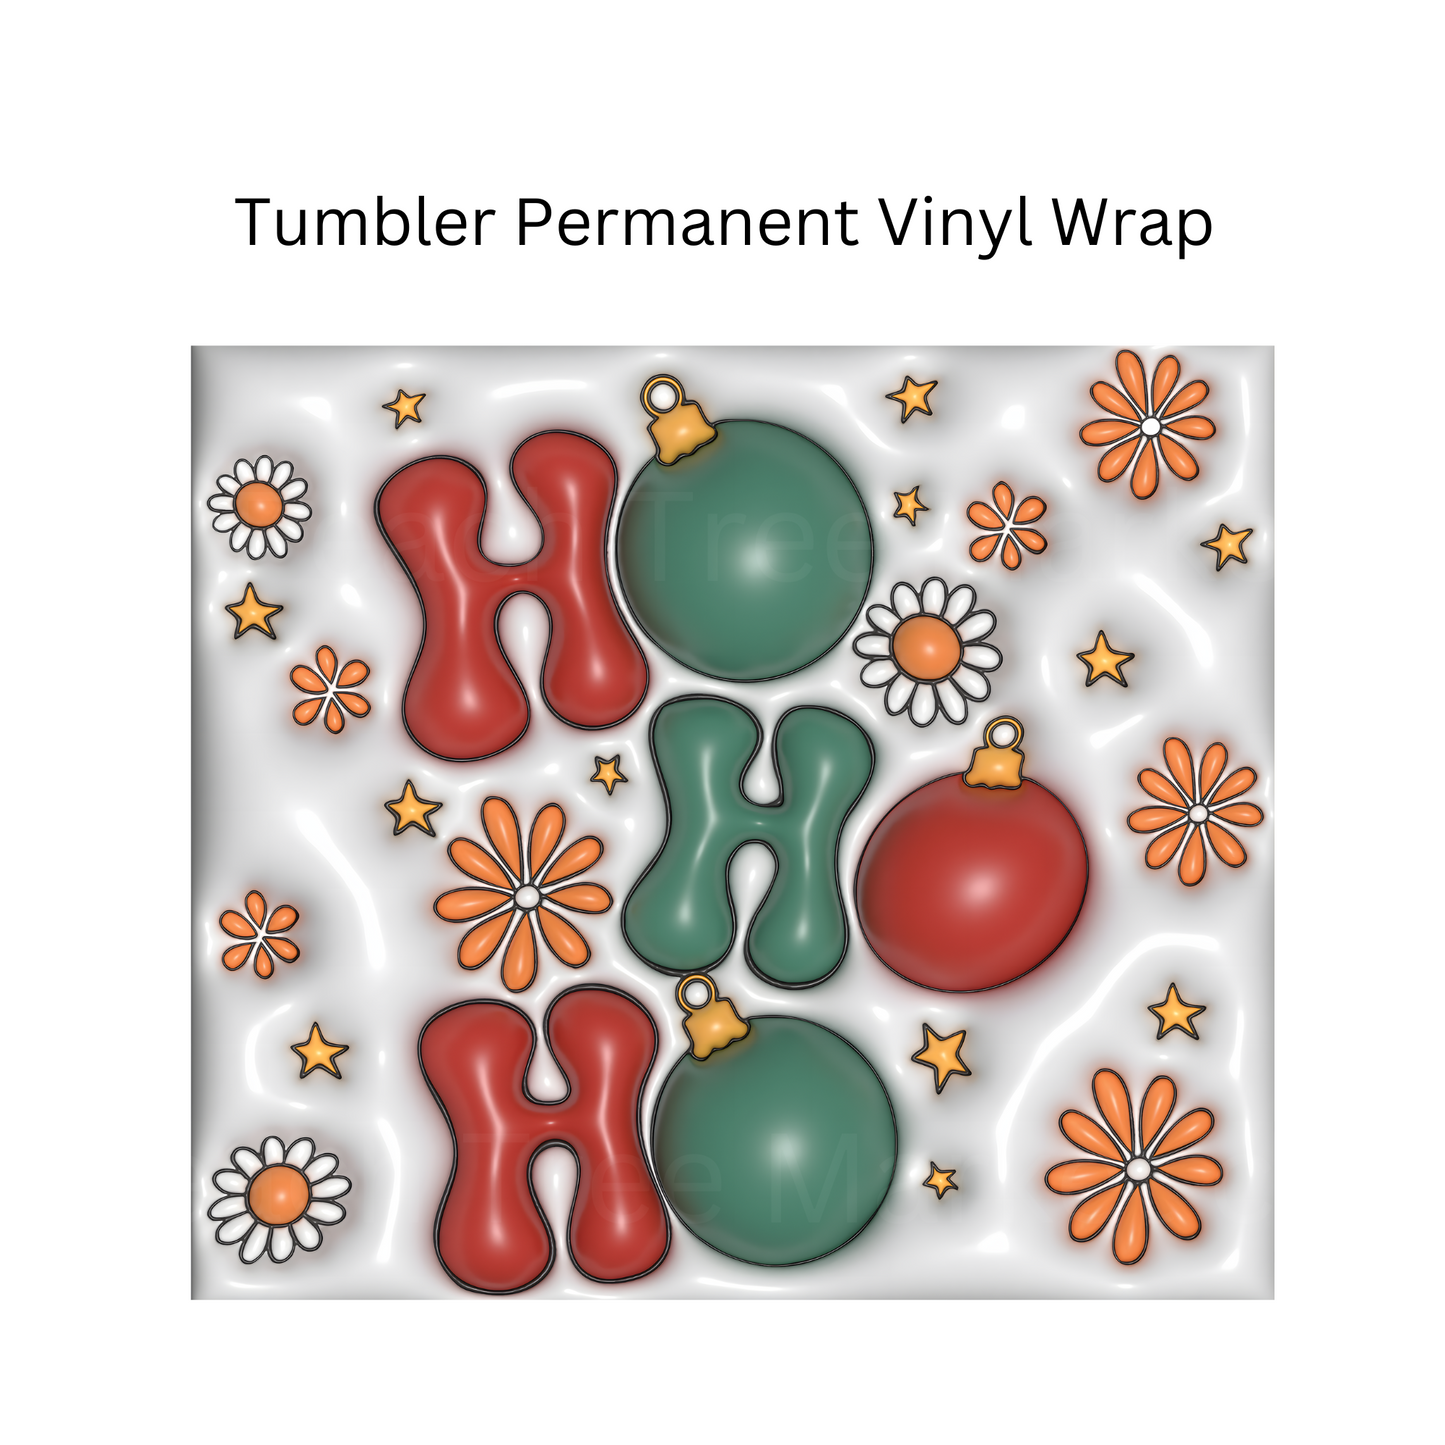 Ho Ho Ho Puff Tumbler Permanent Vinyl Wrap